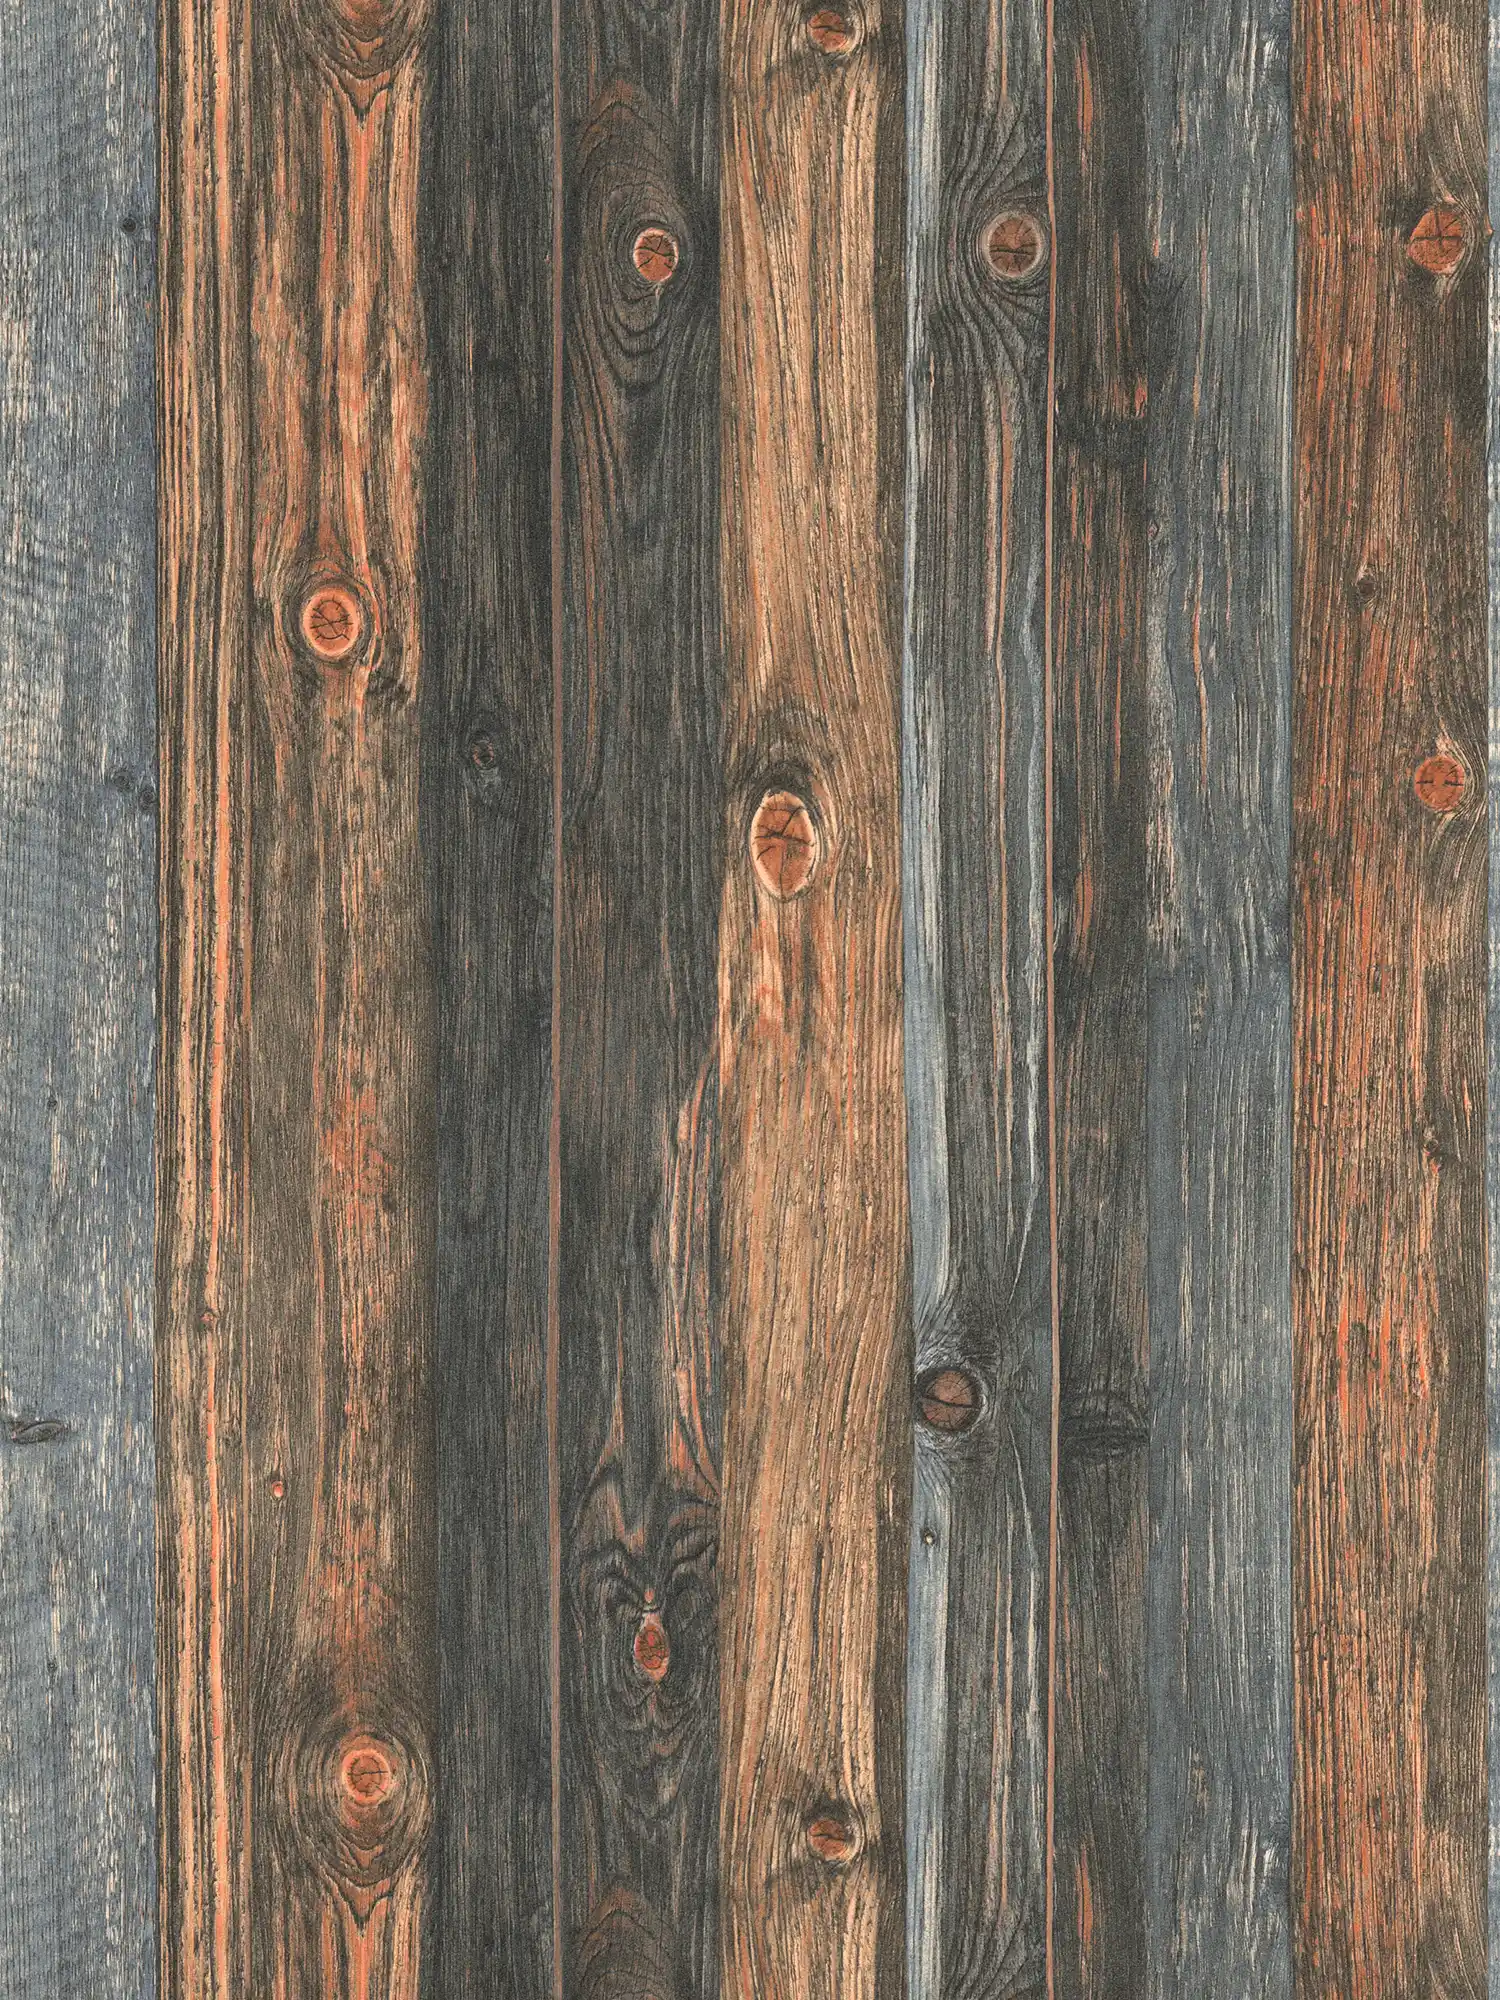         Wooden wallpaper with boards motif, wood texture & grain - brown, grey, beige
    